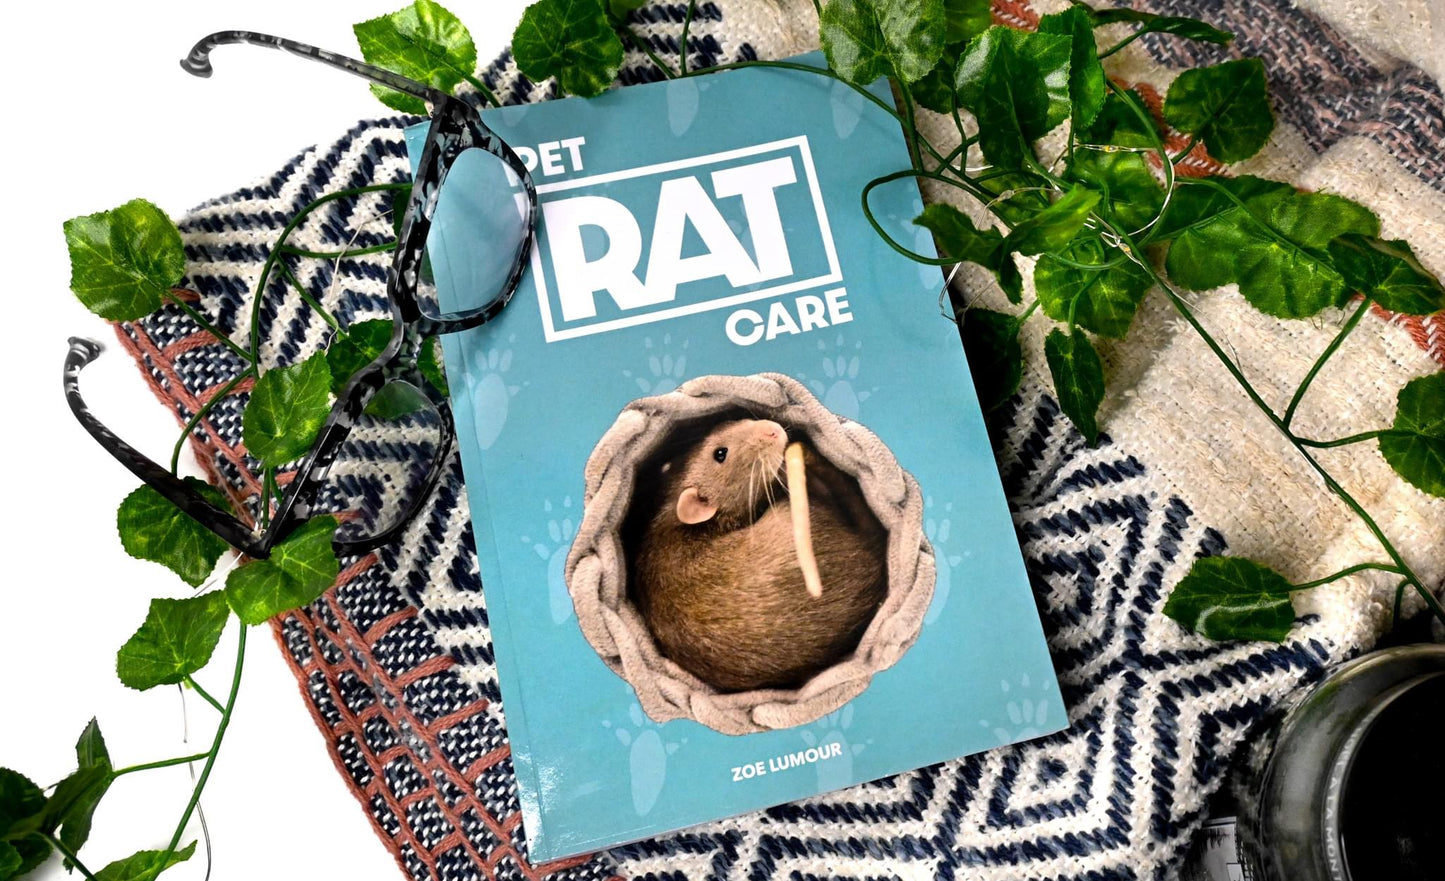 Pet Rat Care Book